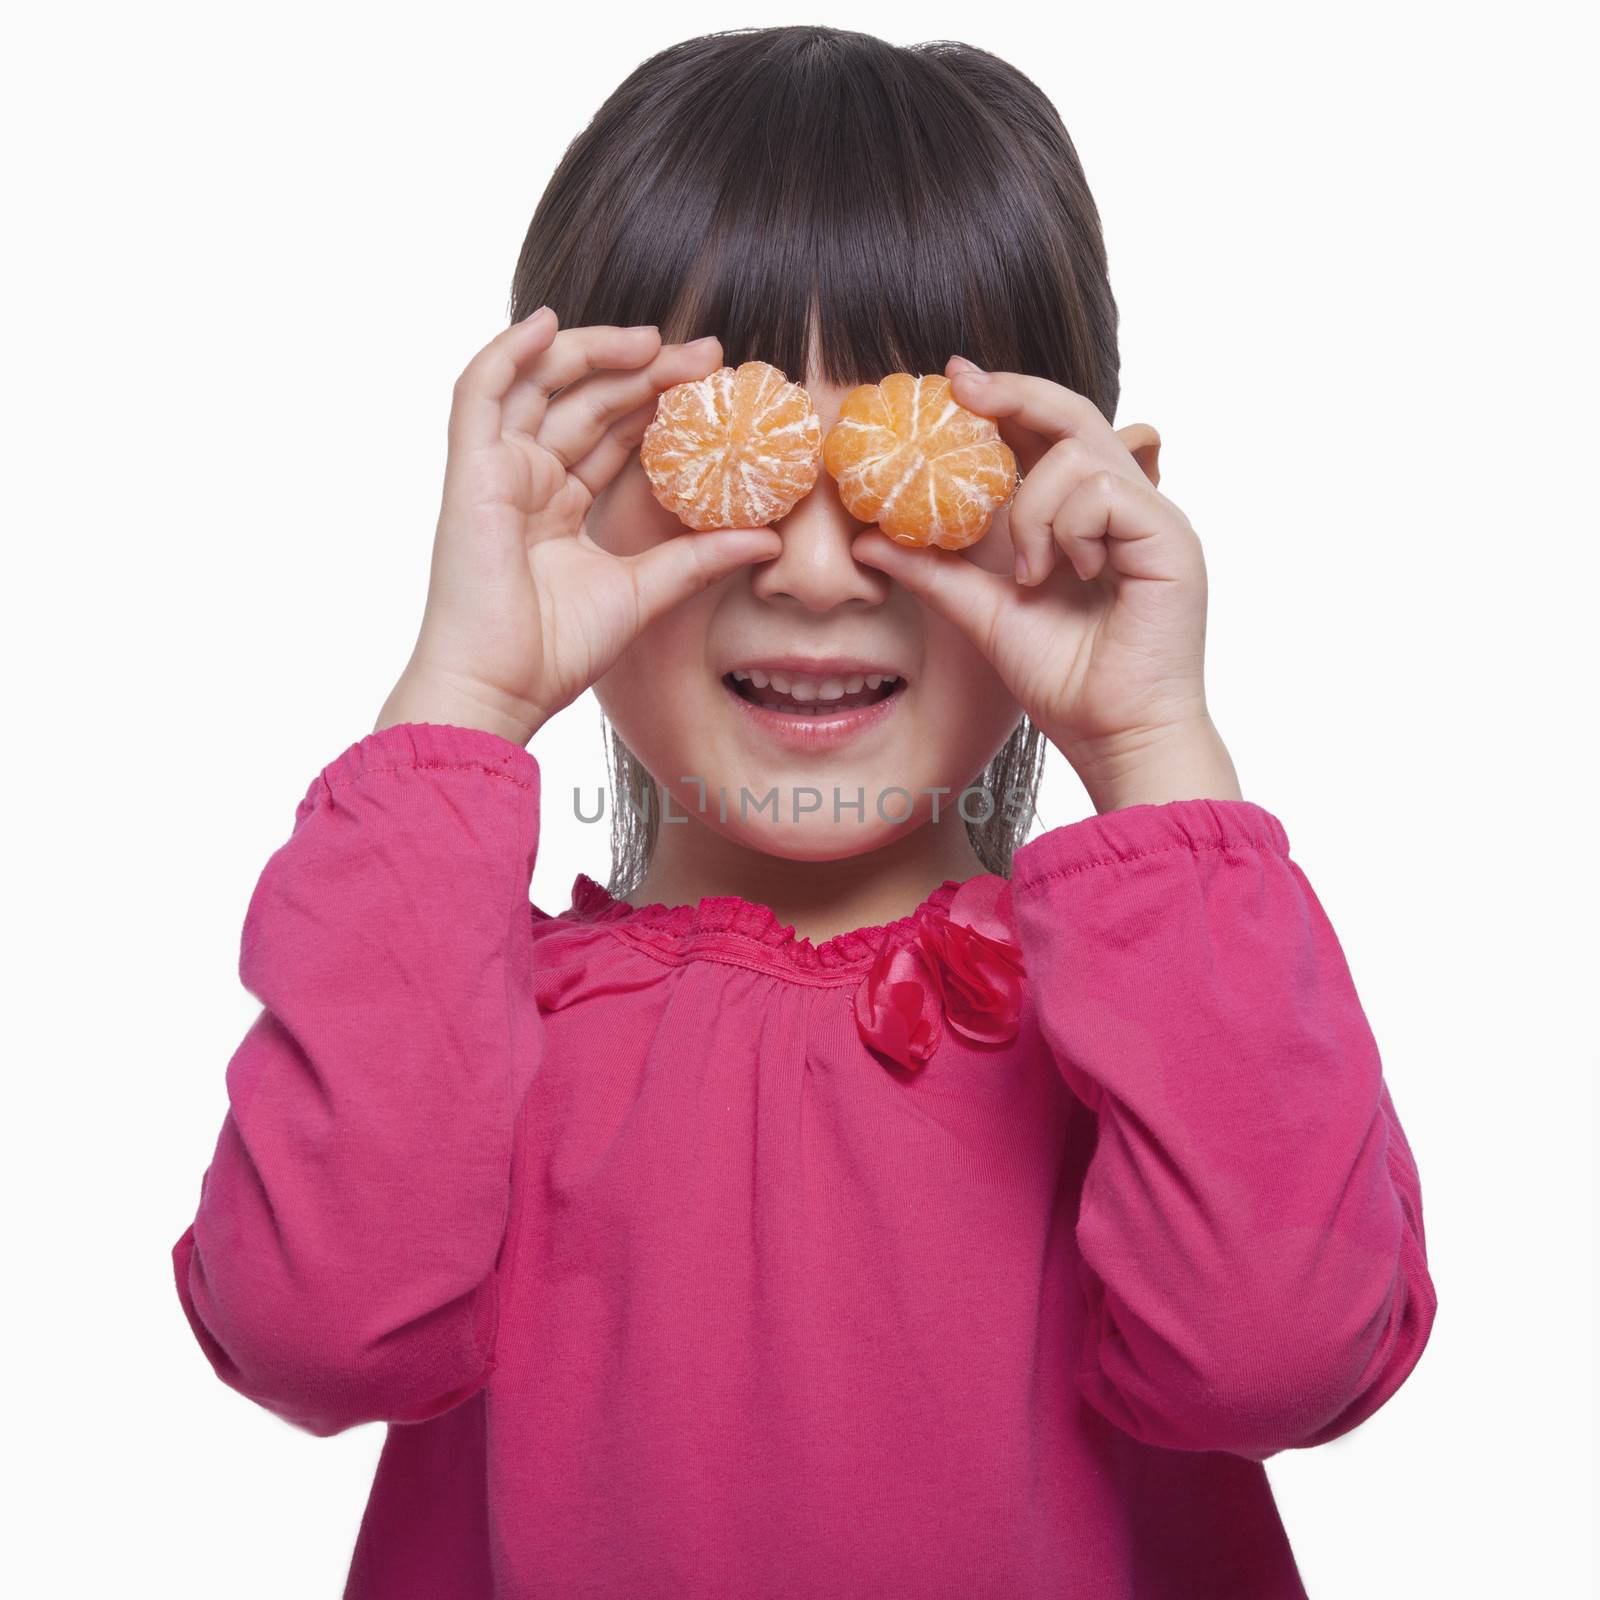 Little girl holding mandarins in front of her eyes, studio shot